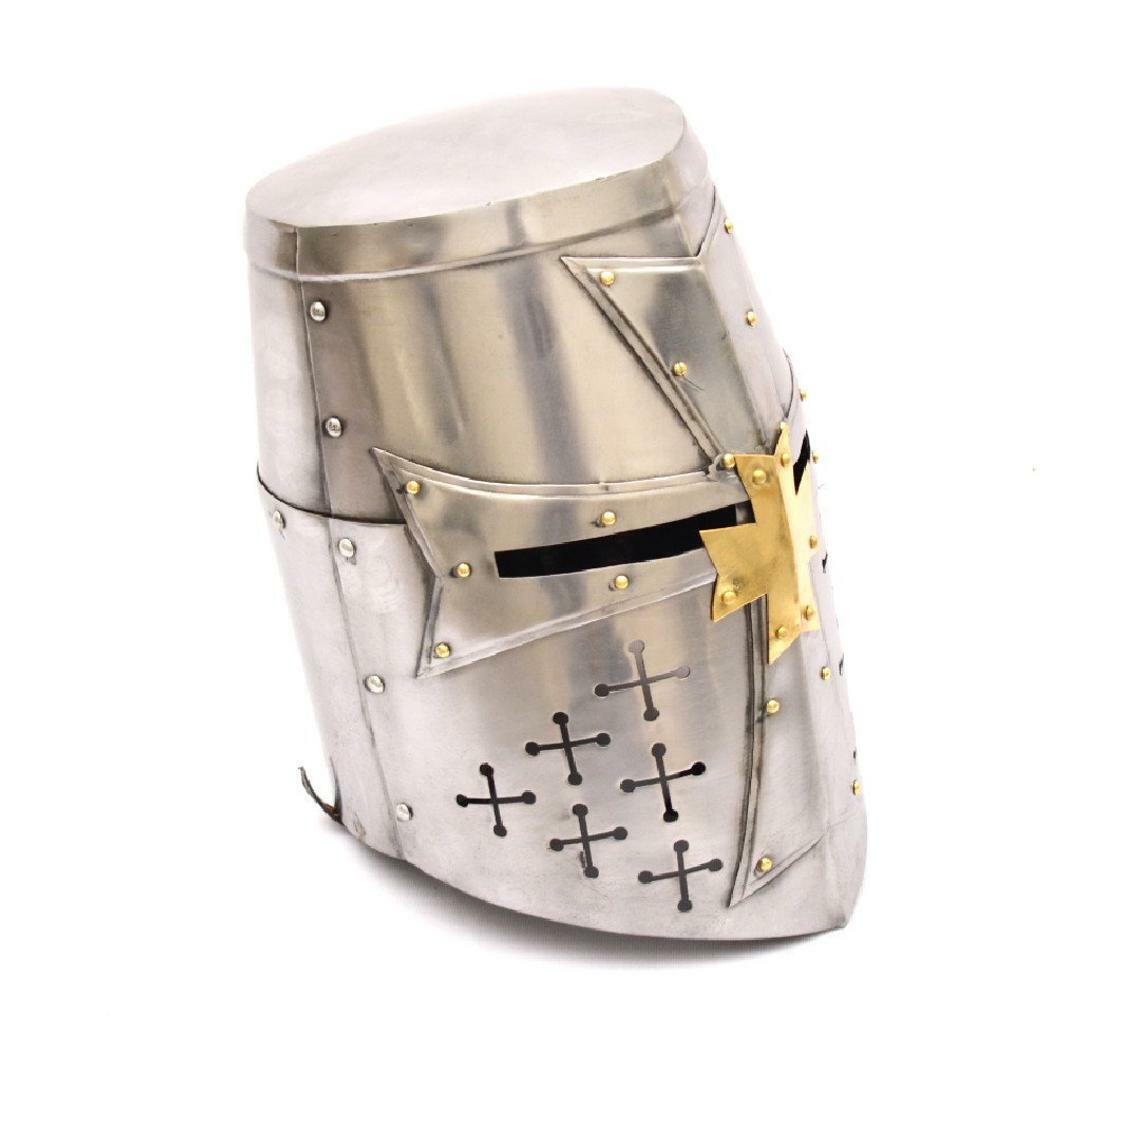 Special Edition Medieval Antique Knight Special Templar Edition Helmet Unique 